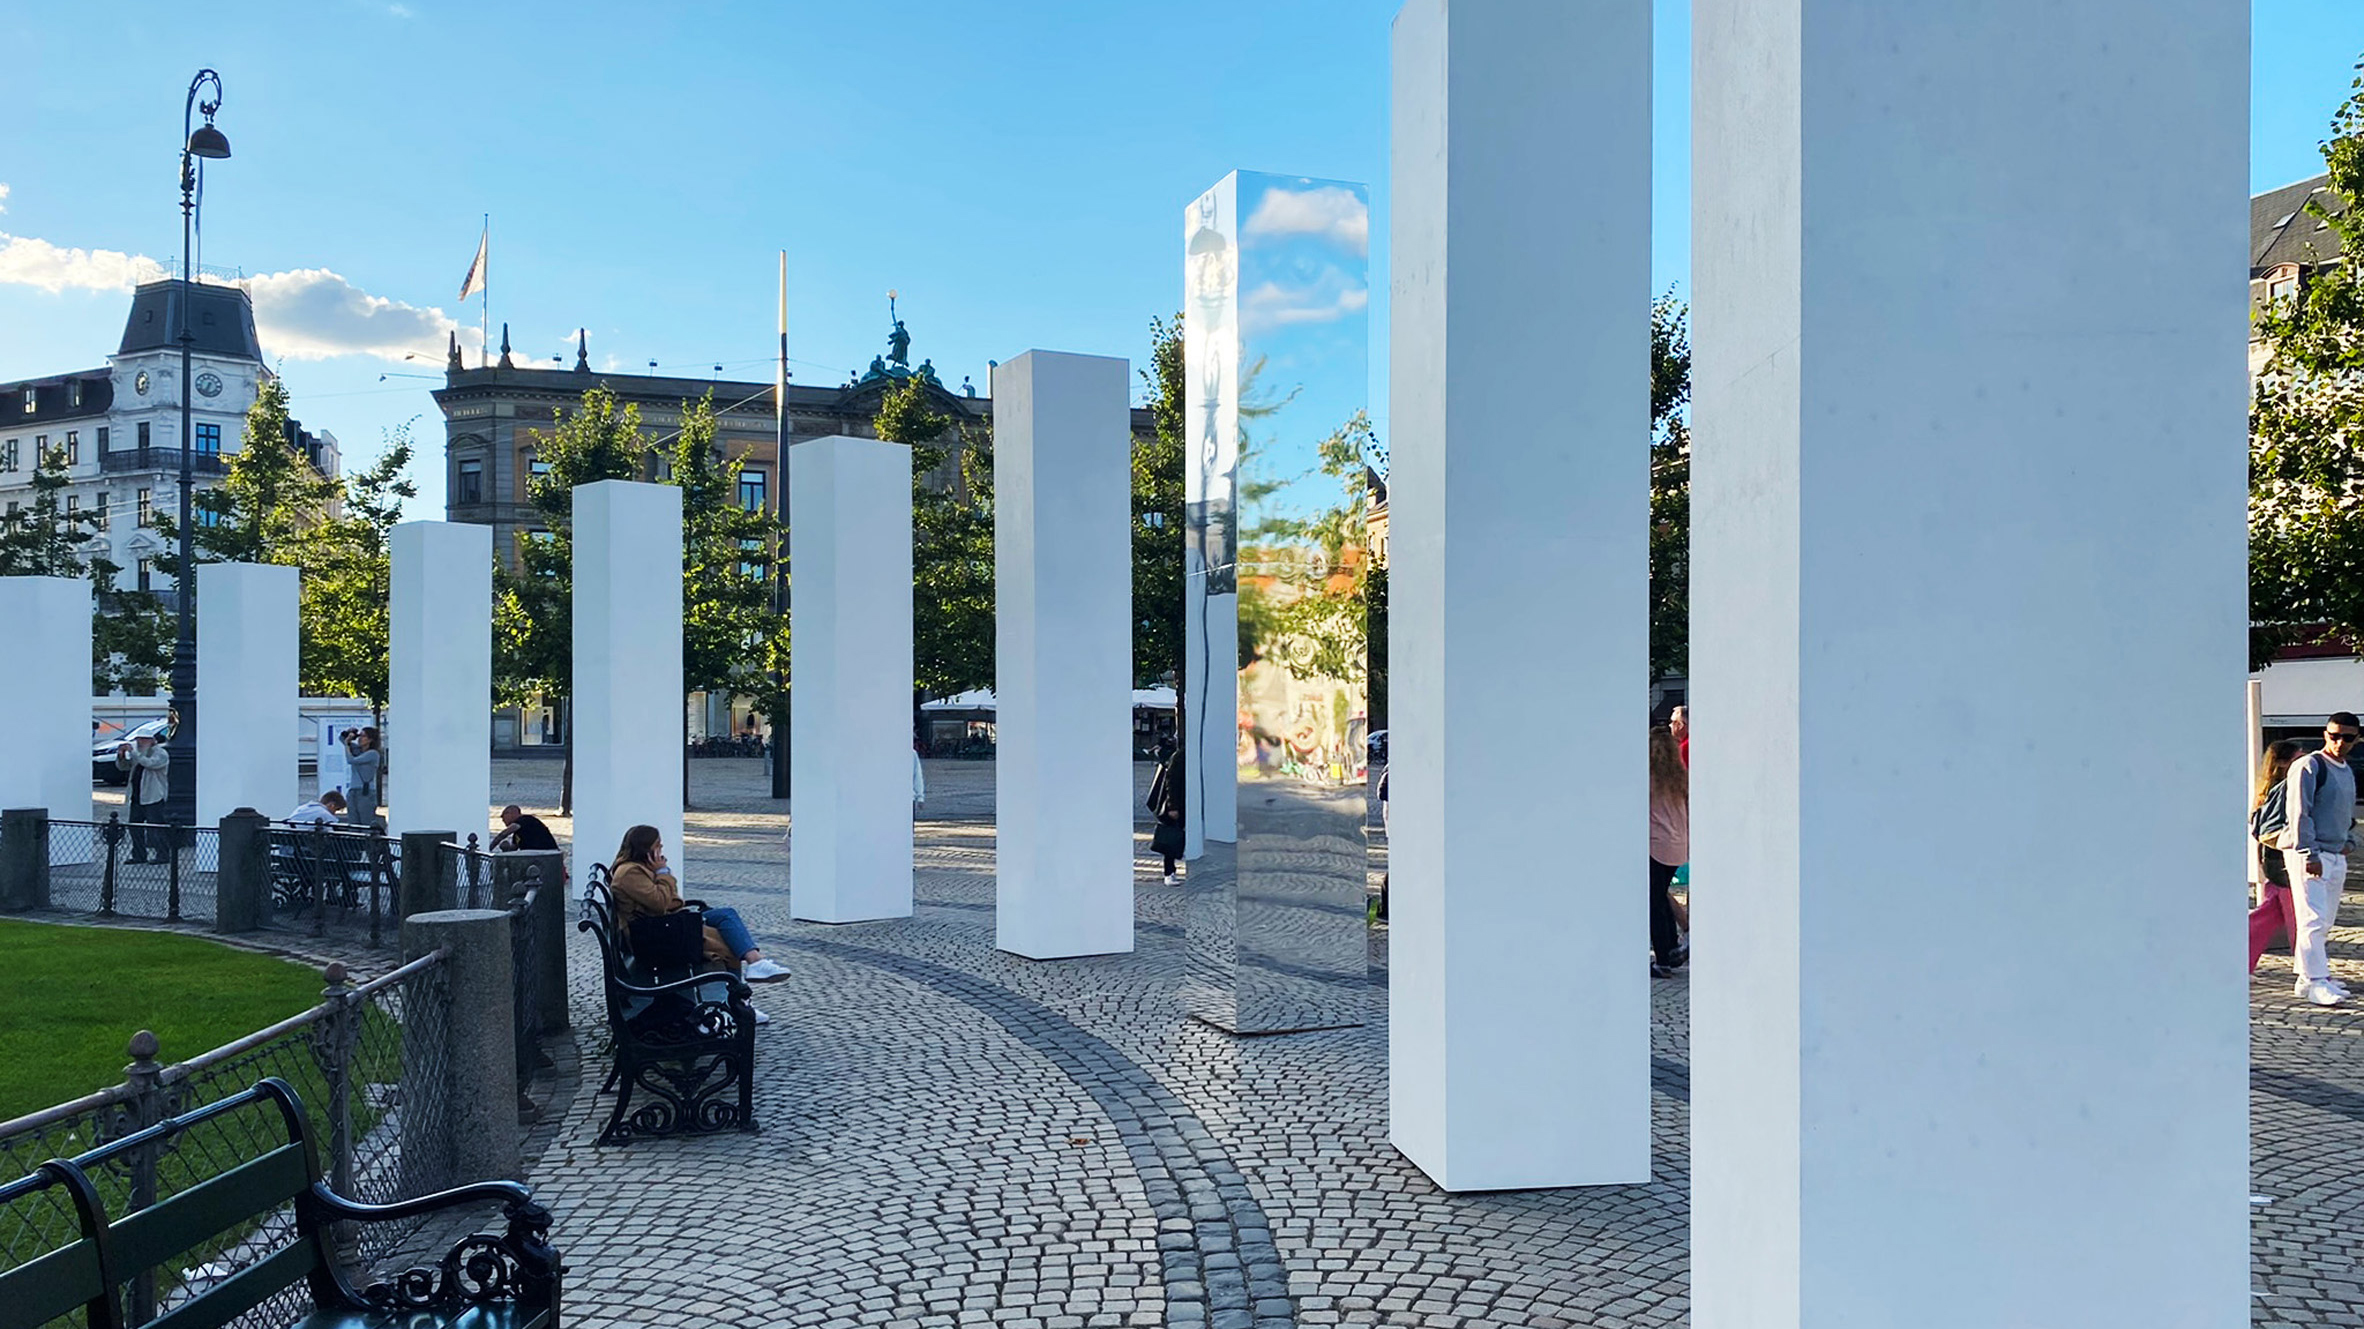 50 Queens installation in Copenhagen